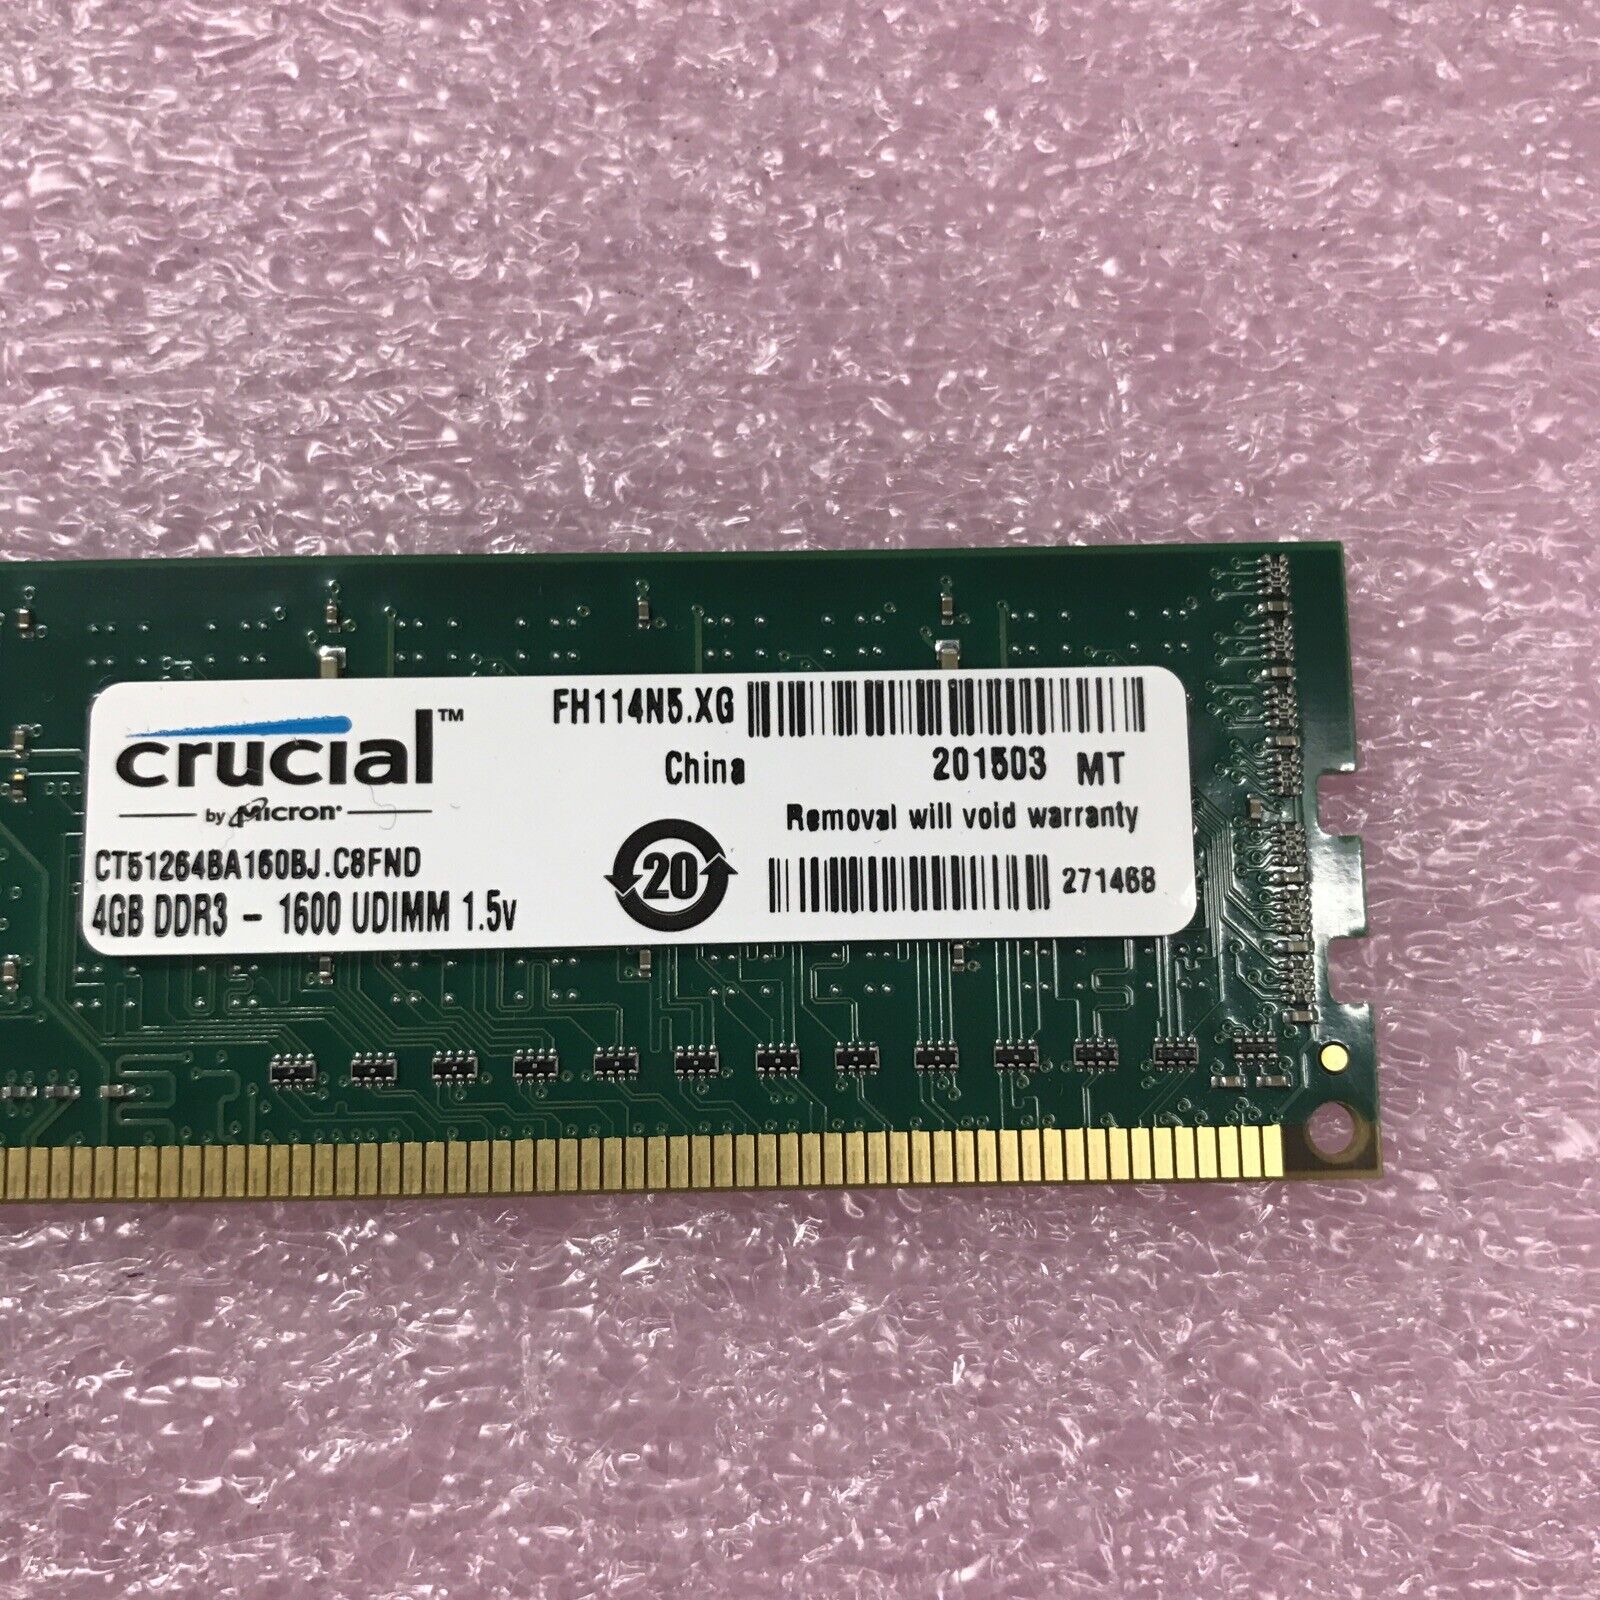 Crucial 8GB Kit 2x4GB Ram CT51264BA160BJ DDR3-1600 UDIMM